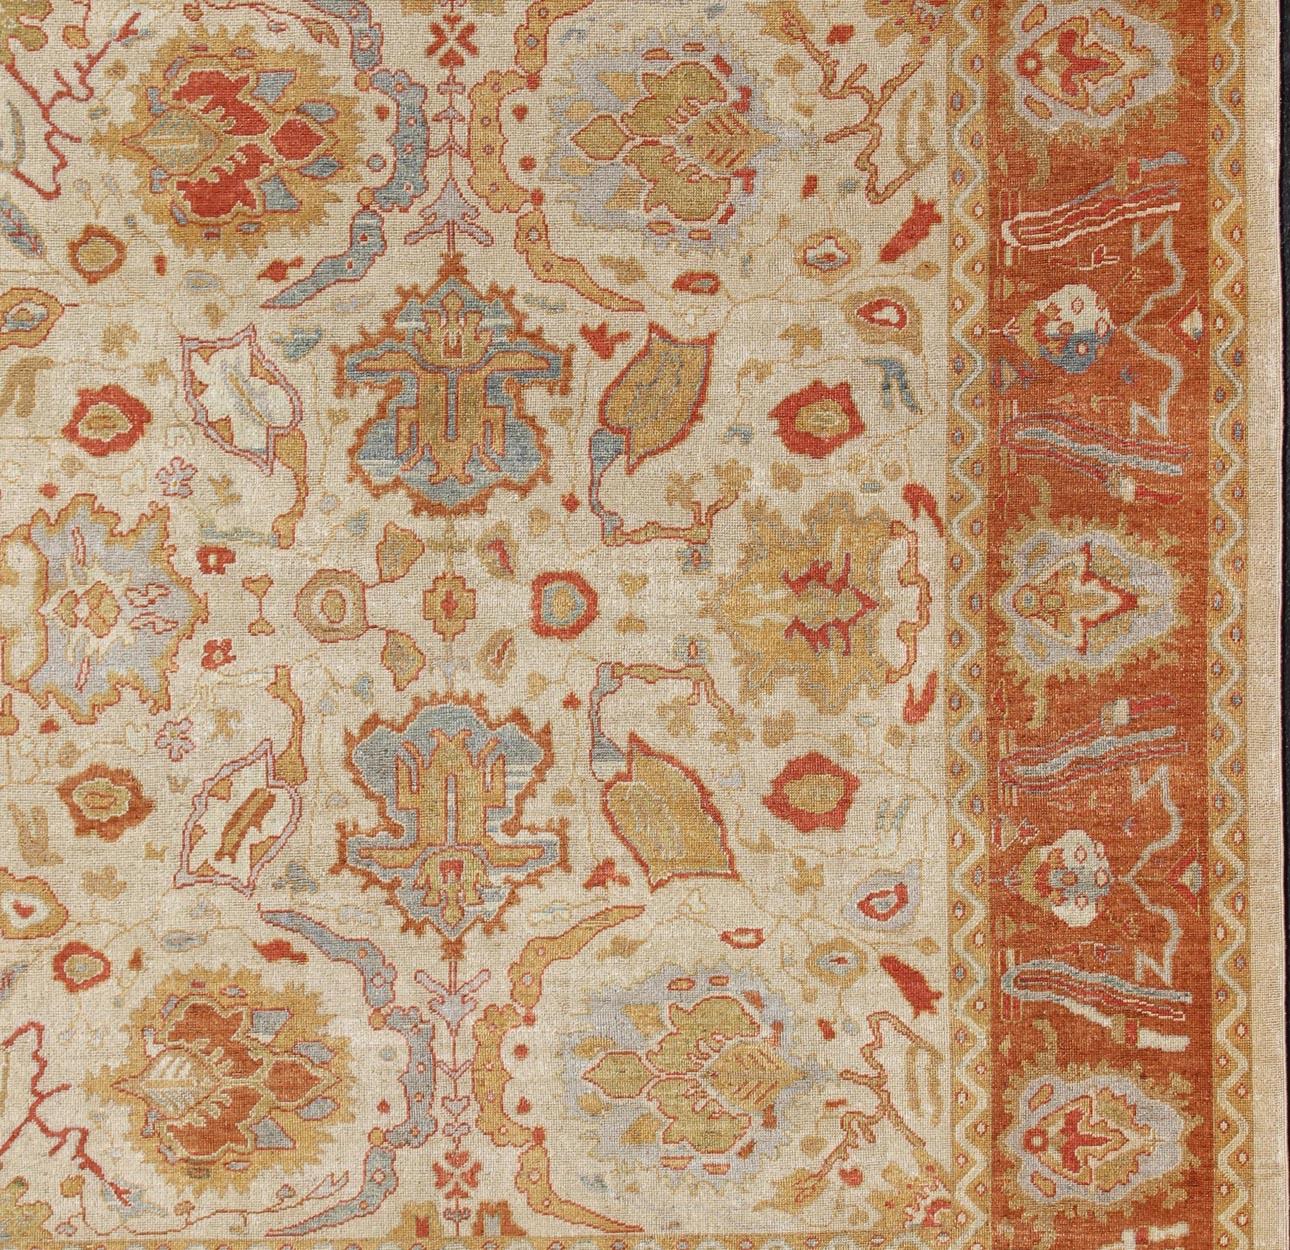 Quadratischer türkischer Oushak-Teppich mit Angorawolle, Herkunftsland / Art: Türkei / Oushak, ca. Anfang 21. Jahrhundert.

Maße: 12' x 13'10. 

Dieser schöne Oushak-Teppich wurde in der Türkei gewebt; der Schwerpunkt bei diesen Teppichen liegt auf